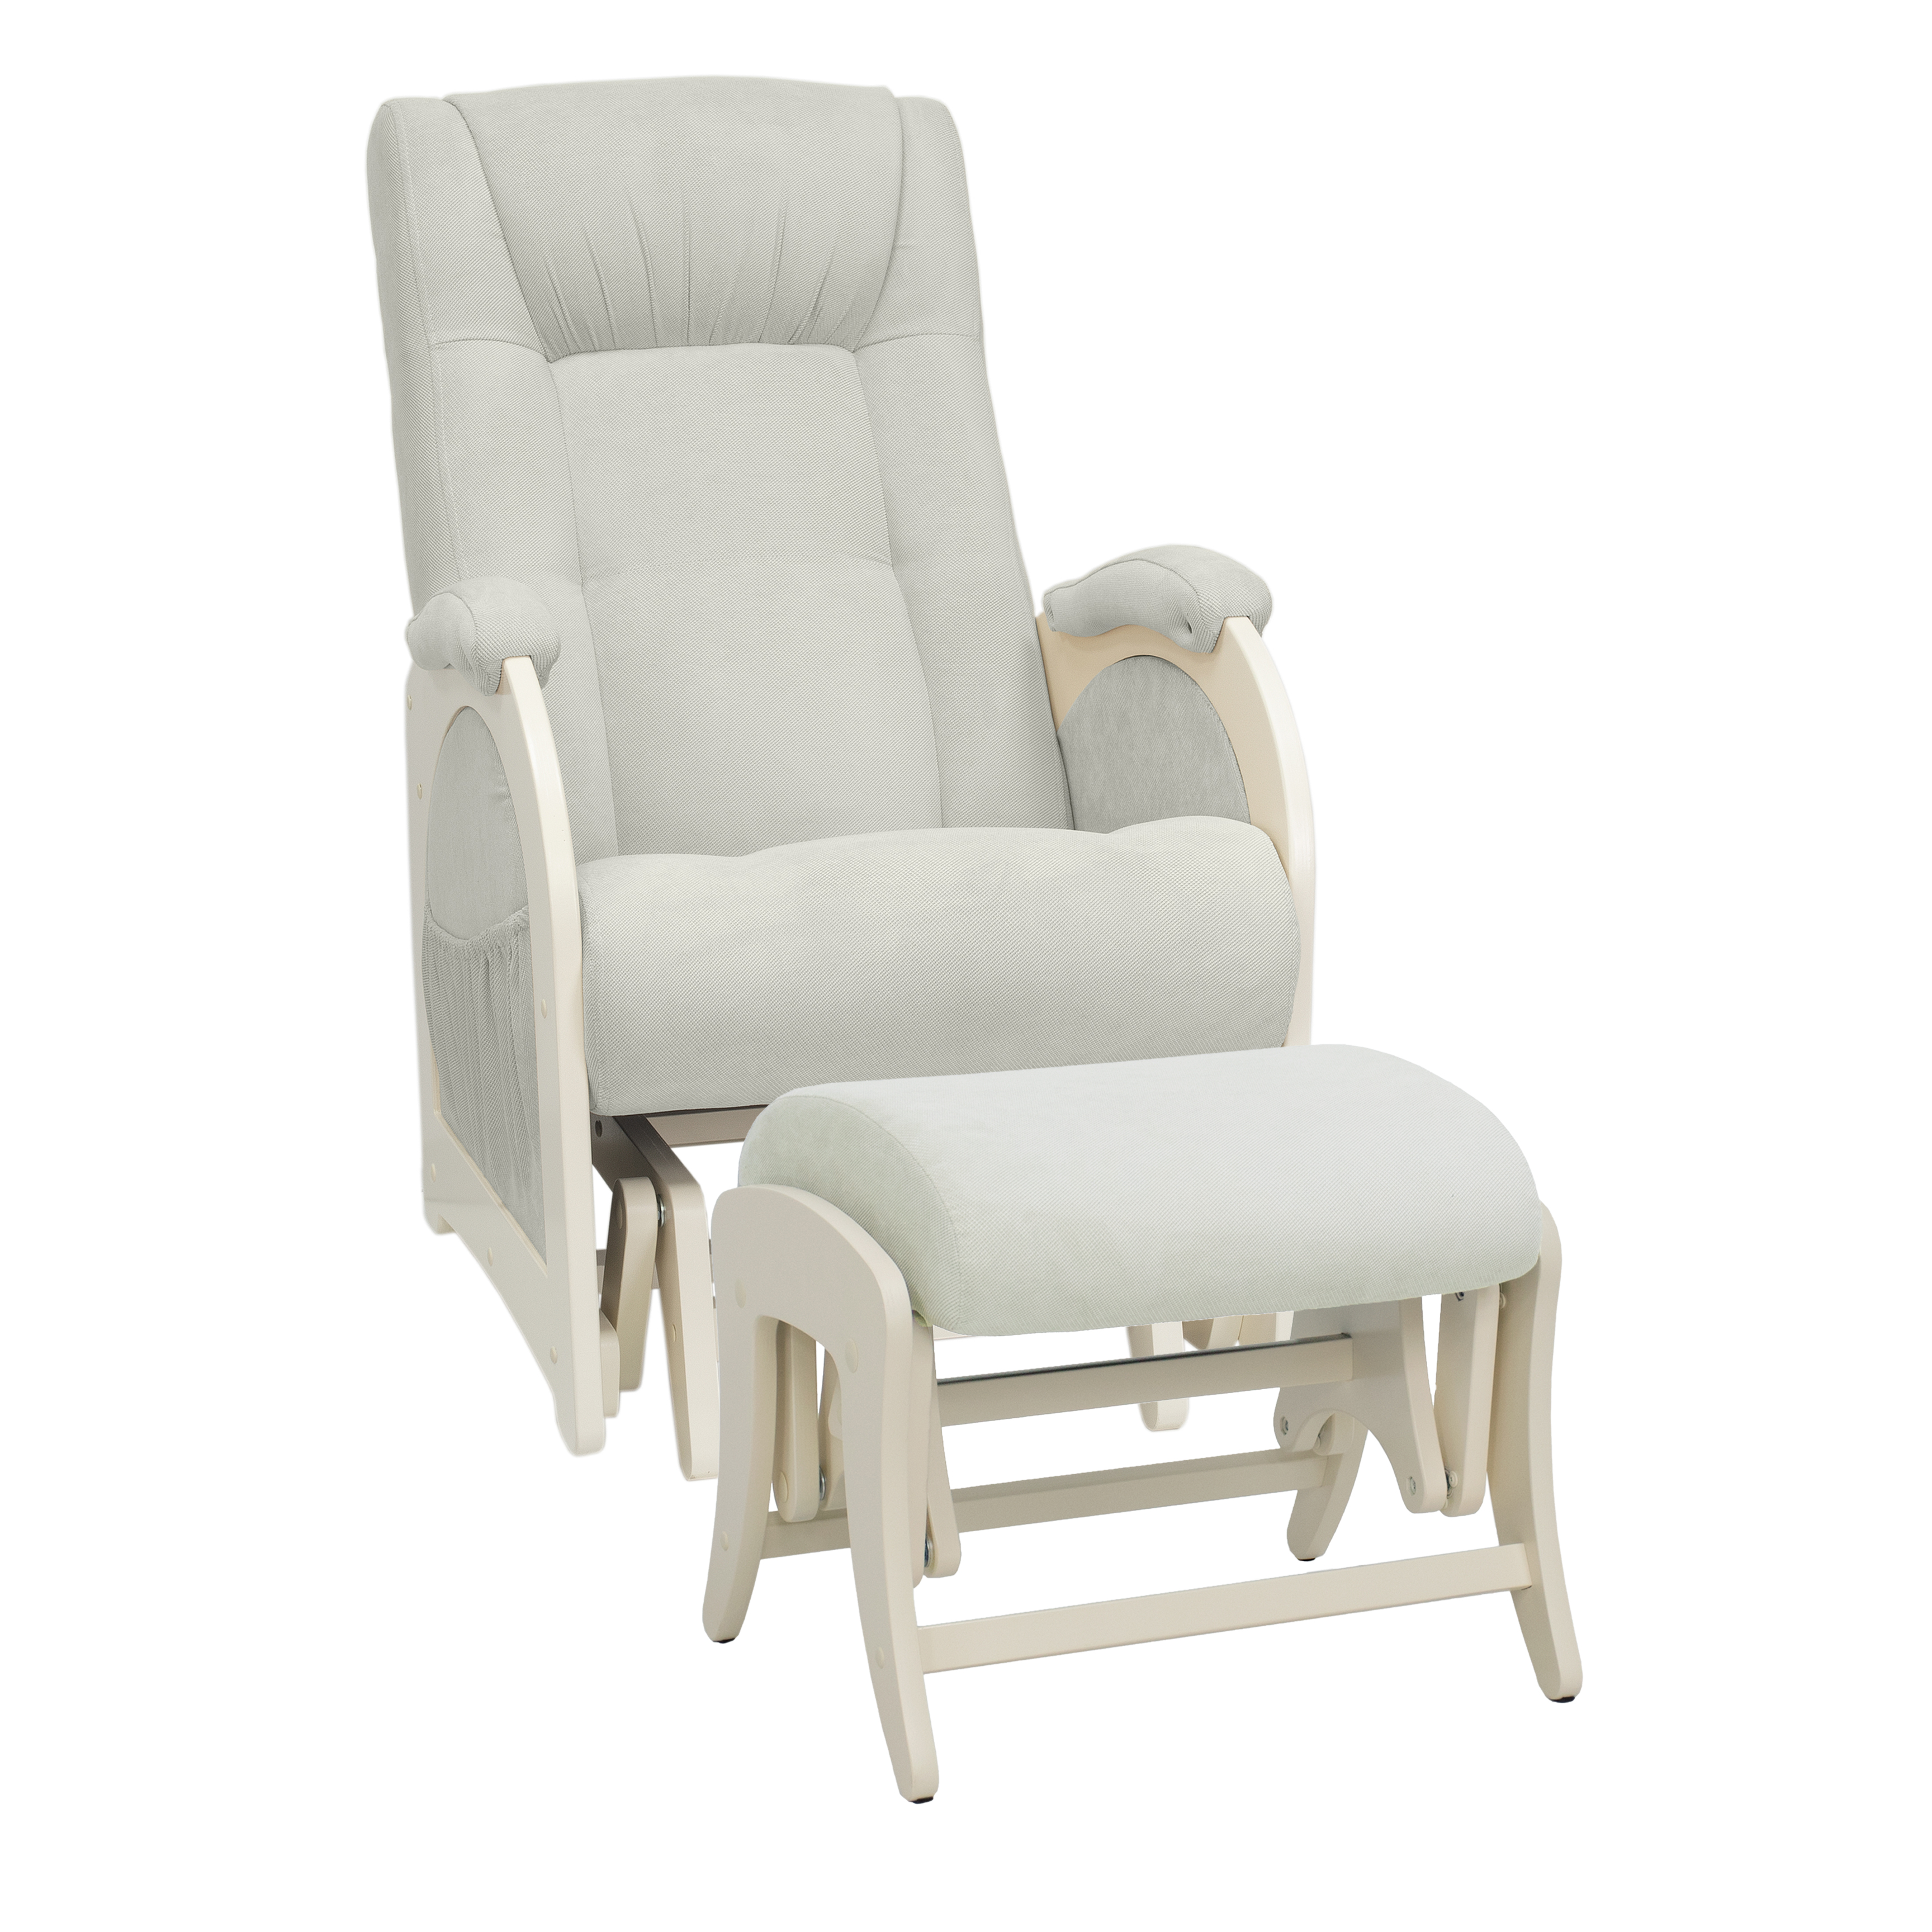 Комплект кресло-глайдер с пуфом для беременных и кормящих Milli Joy, Дуб шампань, ткань Verona